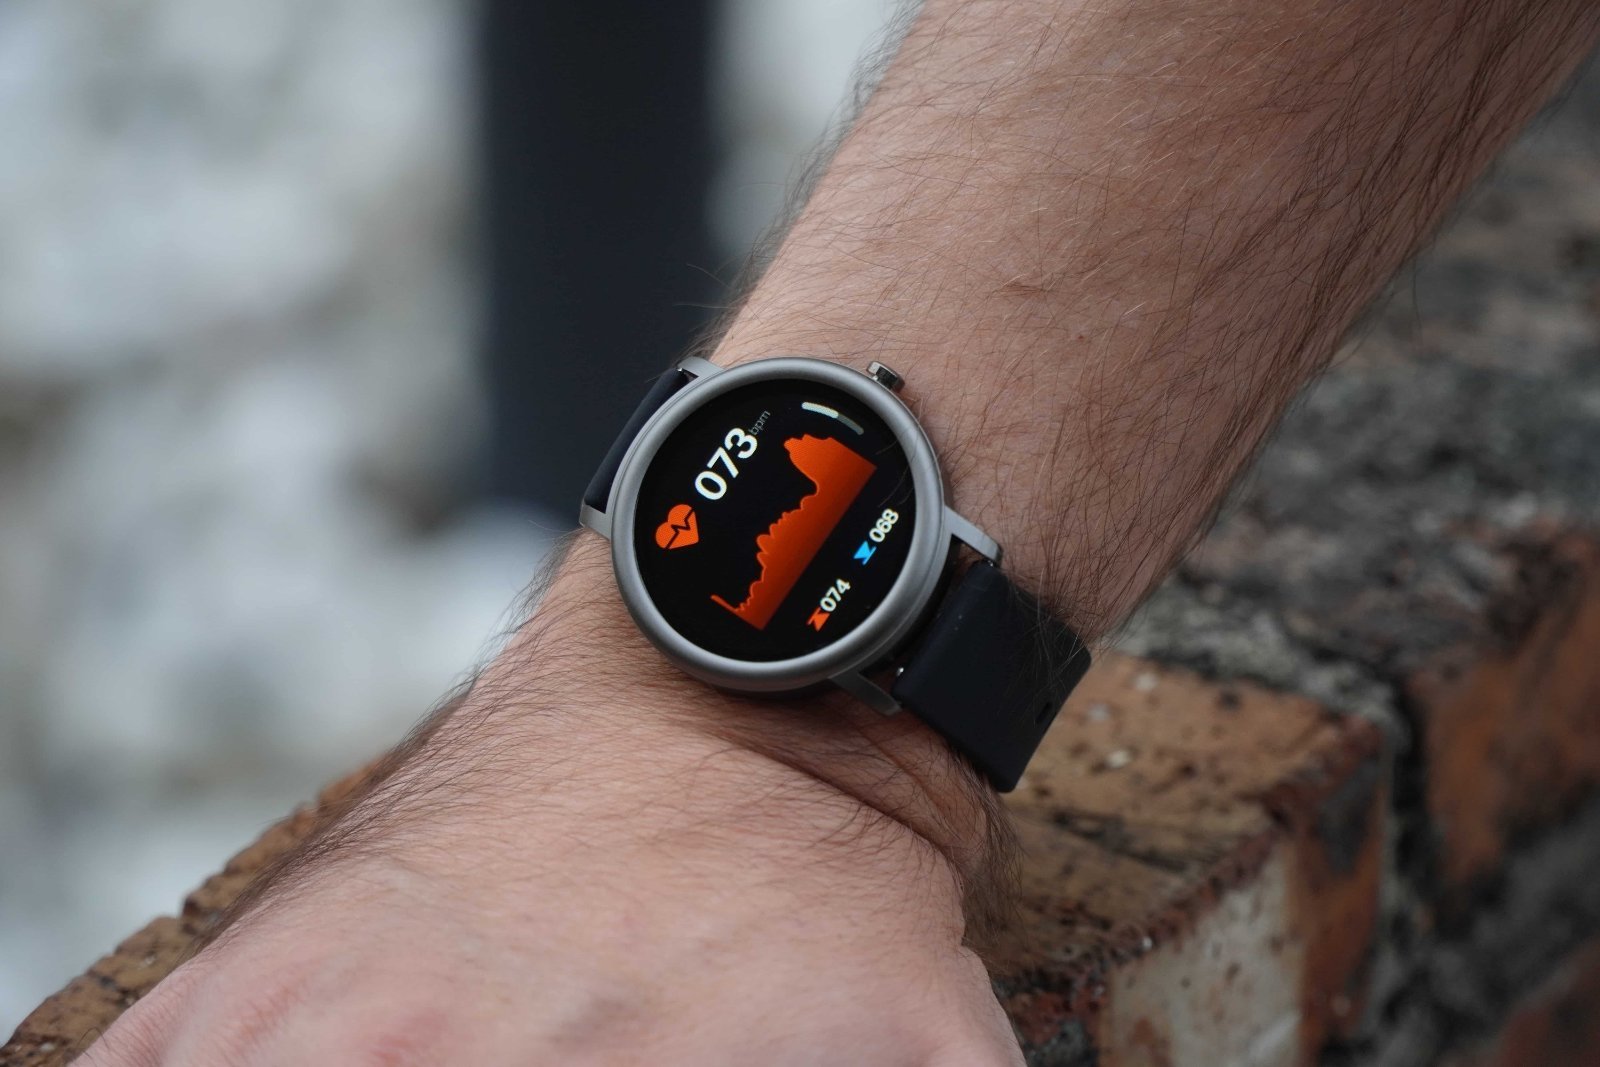 Tecnología y minimalismo unidos en este smartwatch barato apadrinado por Xiaomi: ¡menos de 30 euros!